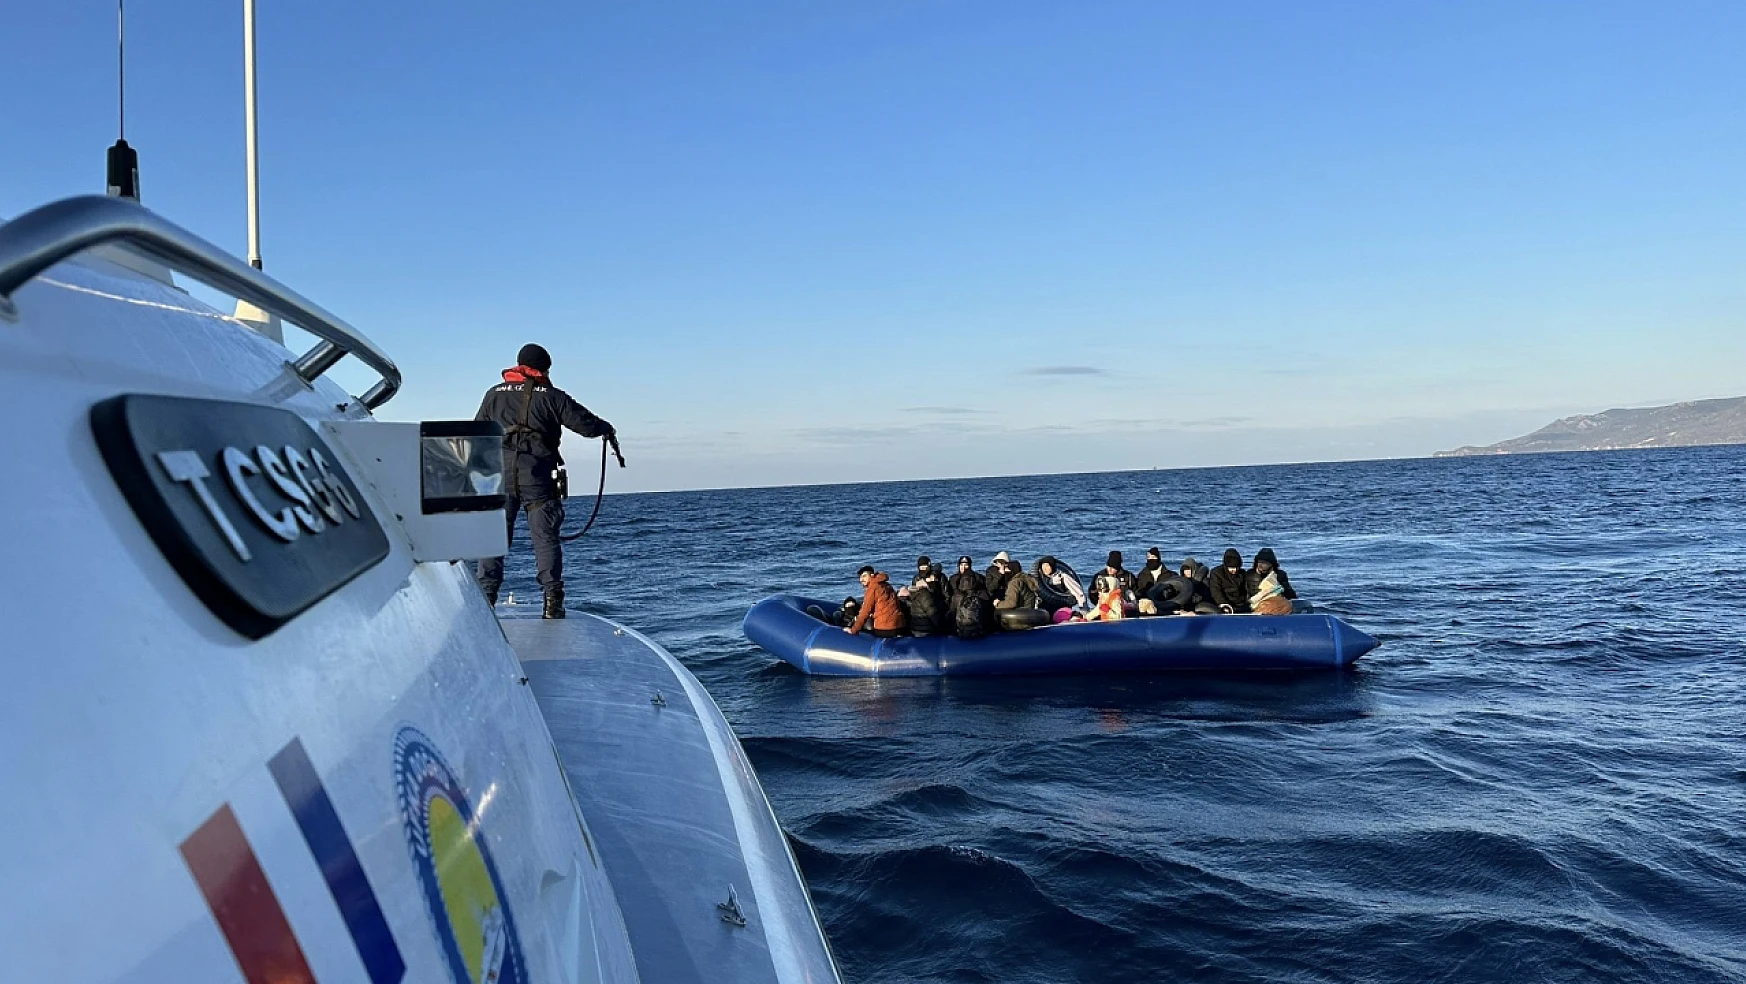 Sahil güvenlik geçit vermiyor! 33 kaçak göçmen enseledi